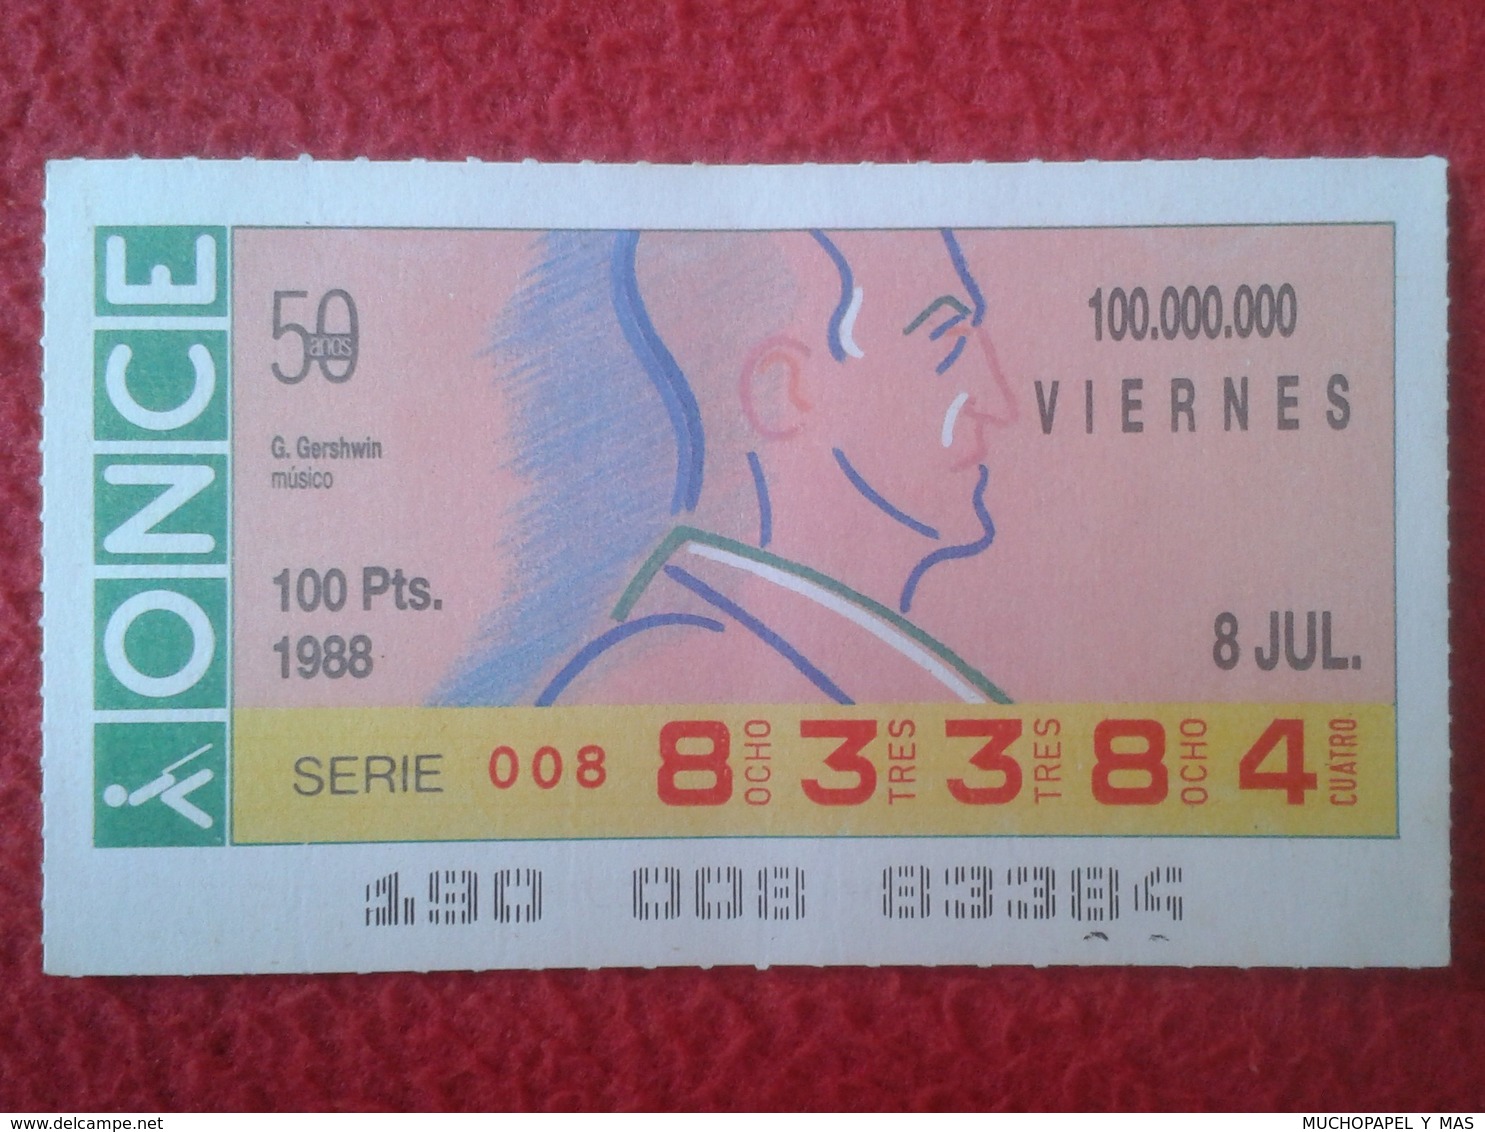 CUPÓN DE ONCE SPANISH LOTTERY CIEGOS SPAIN LOTERÍA BLIND ESPAGNE 1988 MÚSICO MÚSICA CLÁSICA MUSIC GEORGE GERSHWIN VER FO - Lottery Tickets